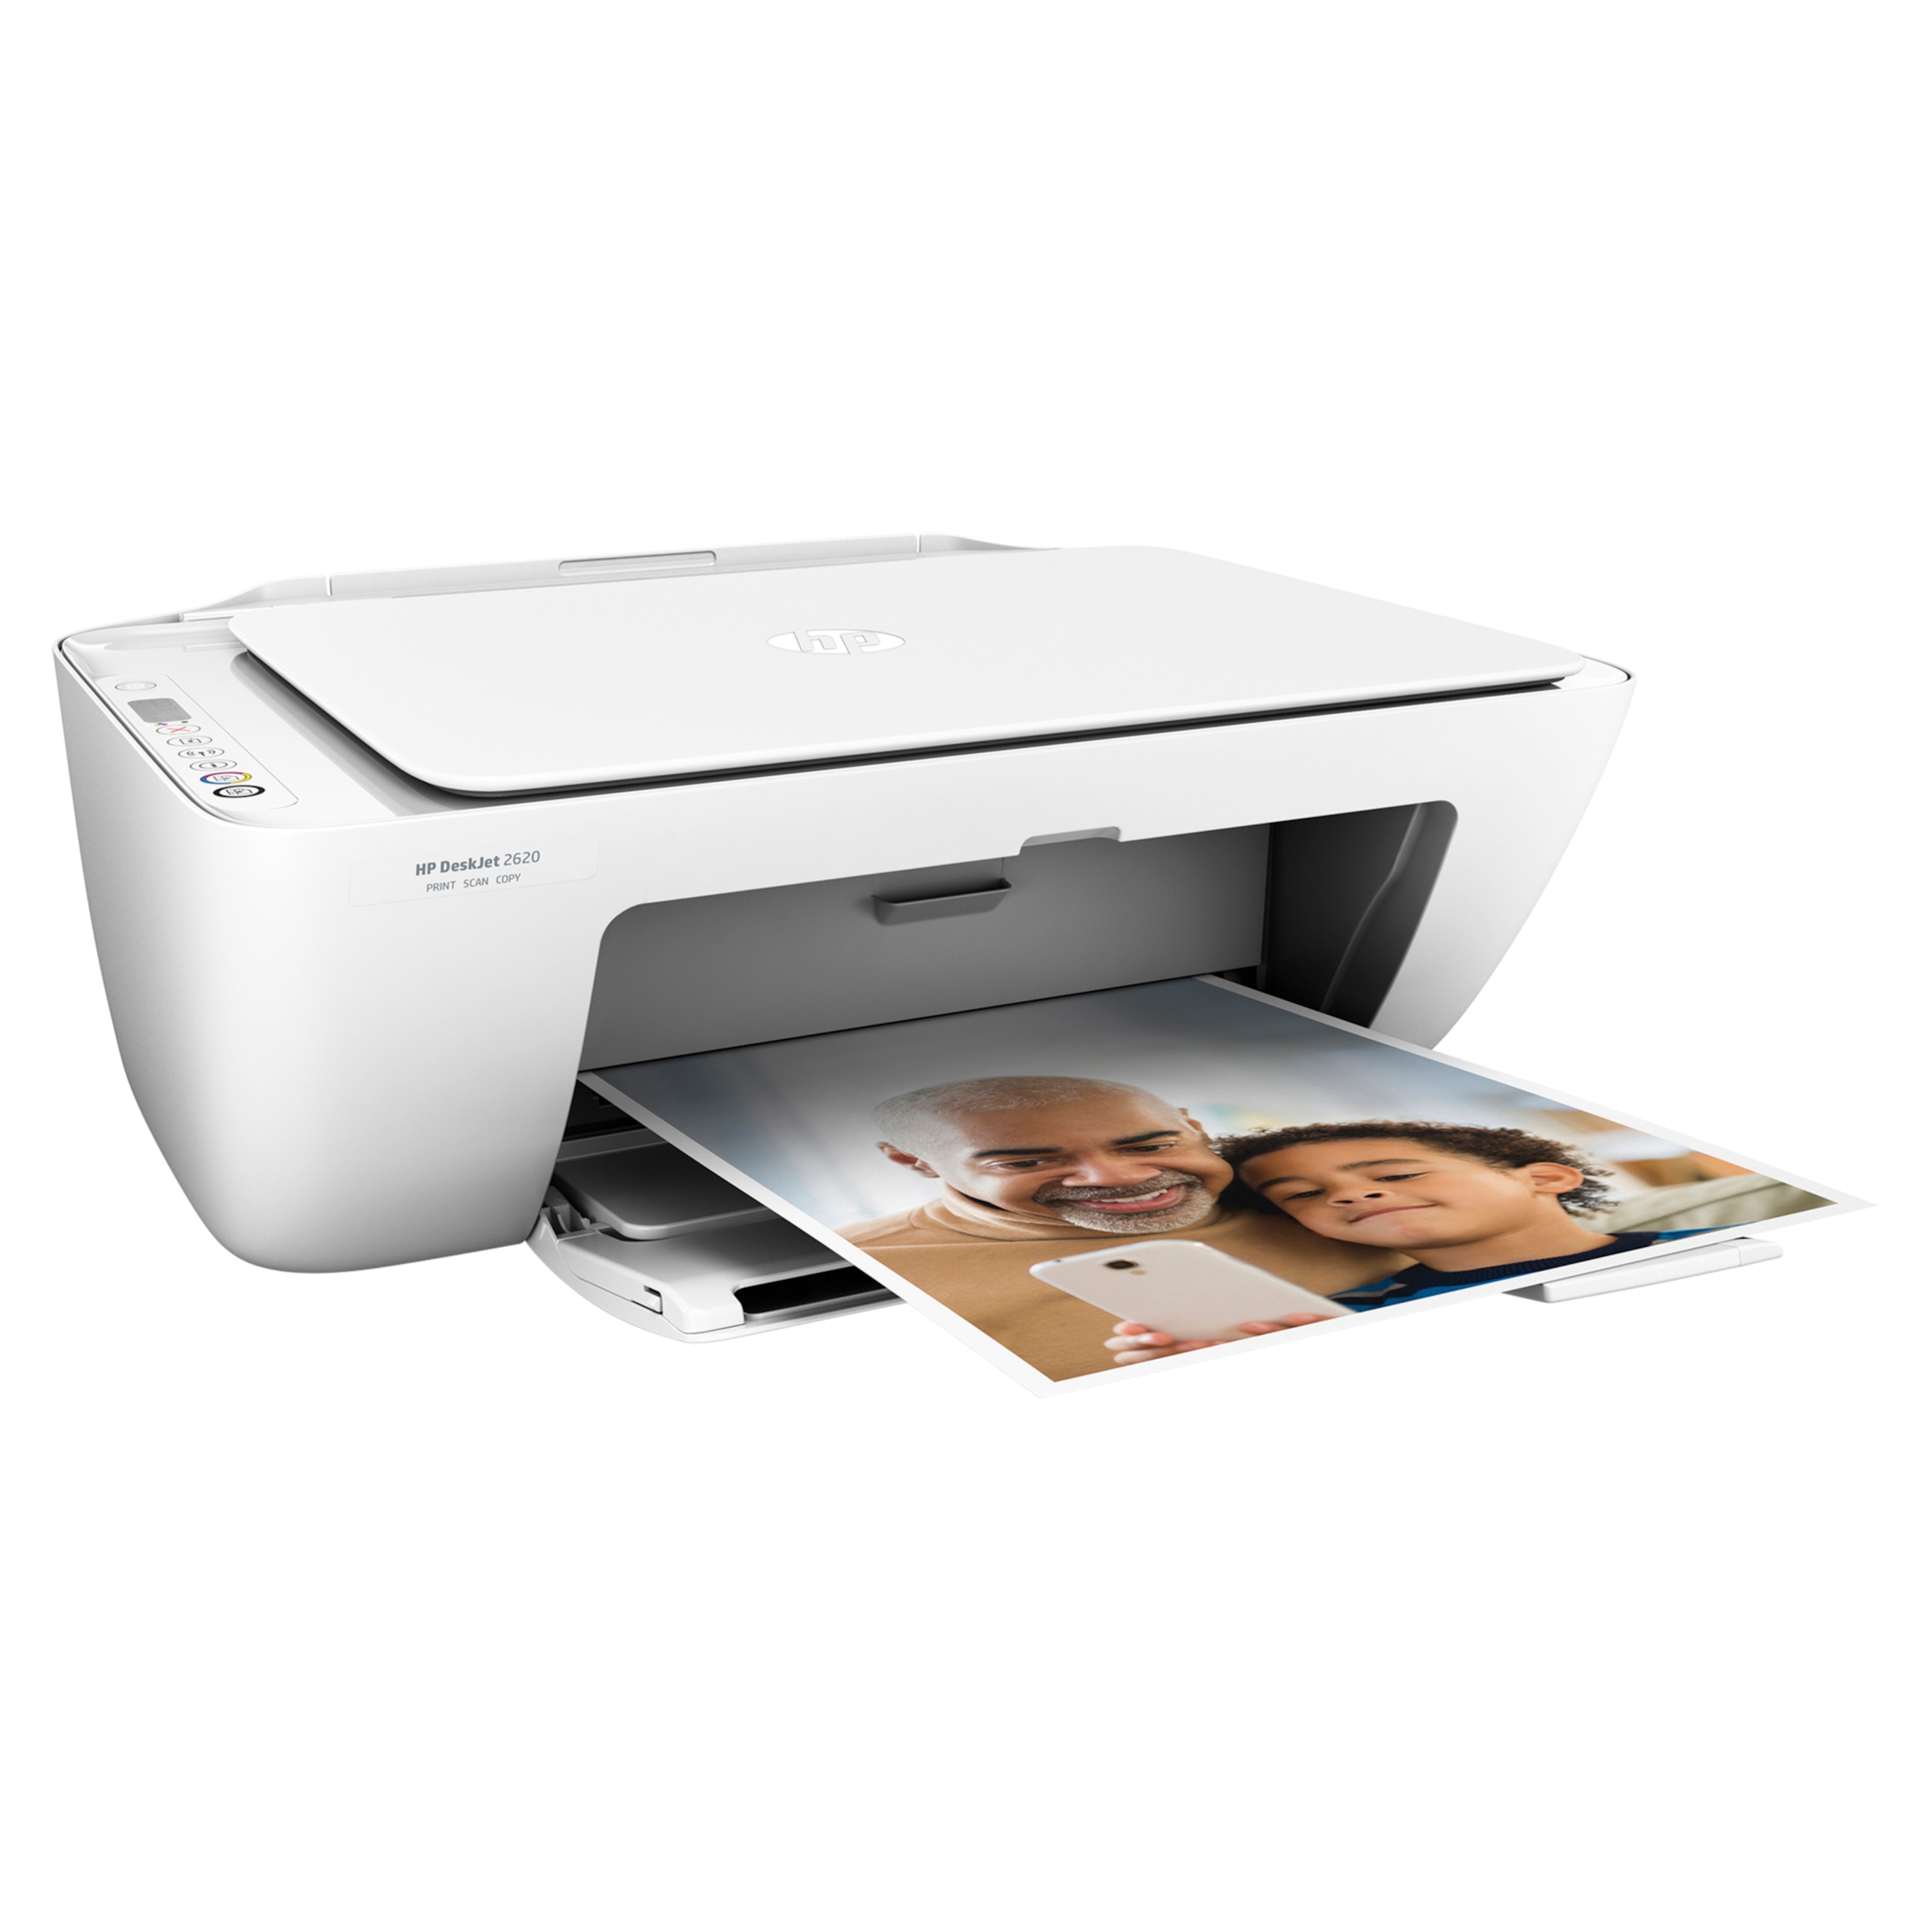 HP DeskJet 2620 All-in-One Drucker, Drucken, Kopieren und Scannen mit einem Gerät, WLAN, USB 2.0, APP-Unterstützung, Wireless Direct Technologie